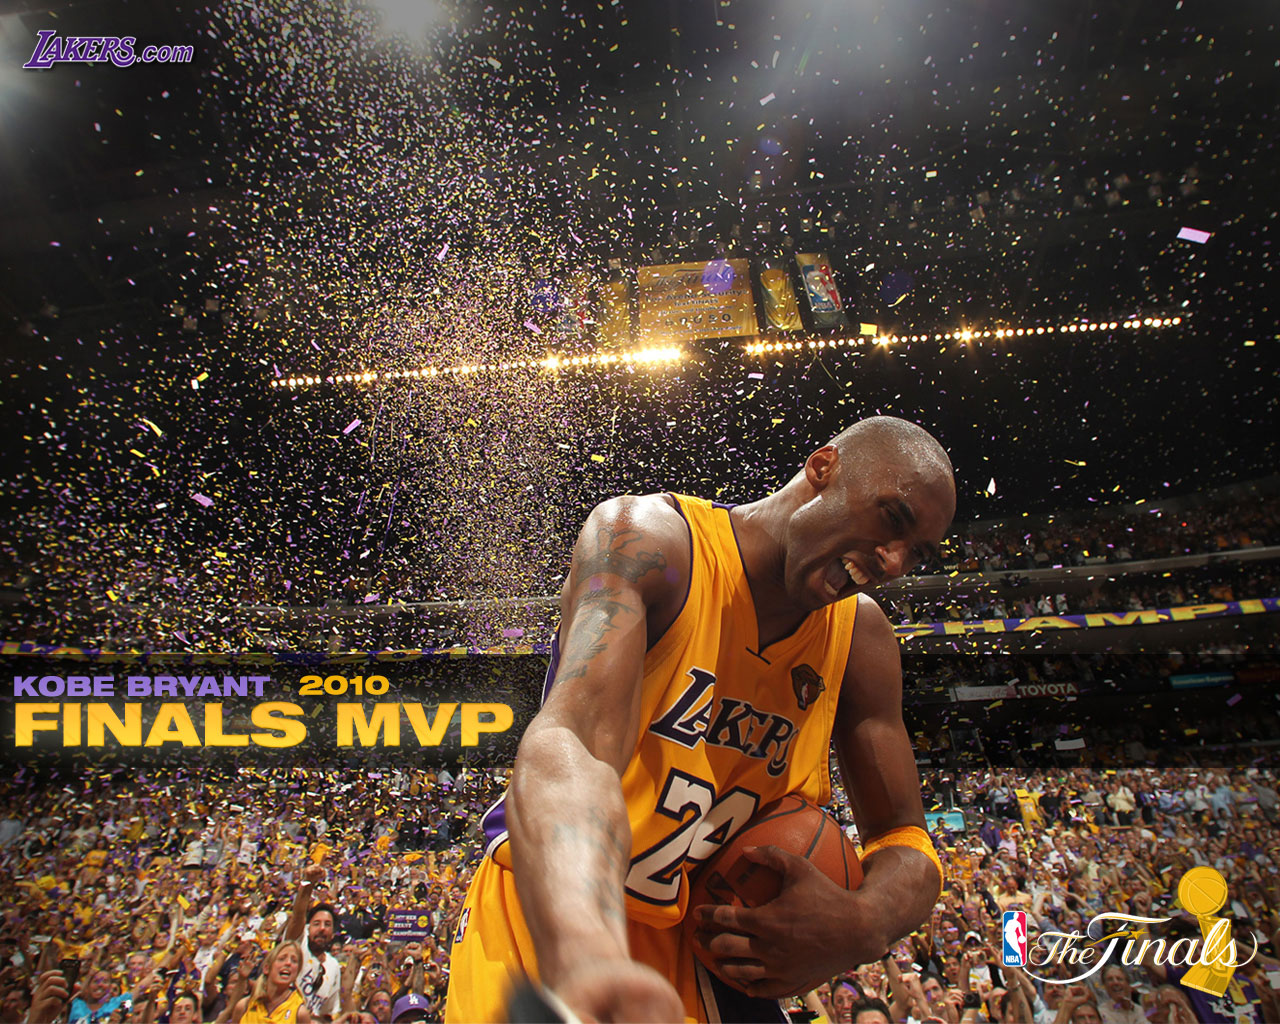 Kobe Bryant 2010 NBA Finals MVP Wallpaper | Basketball Wallpapers at